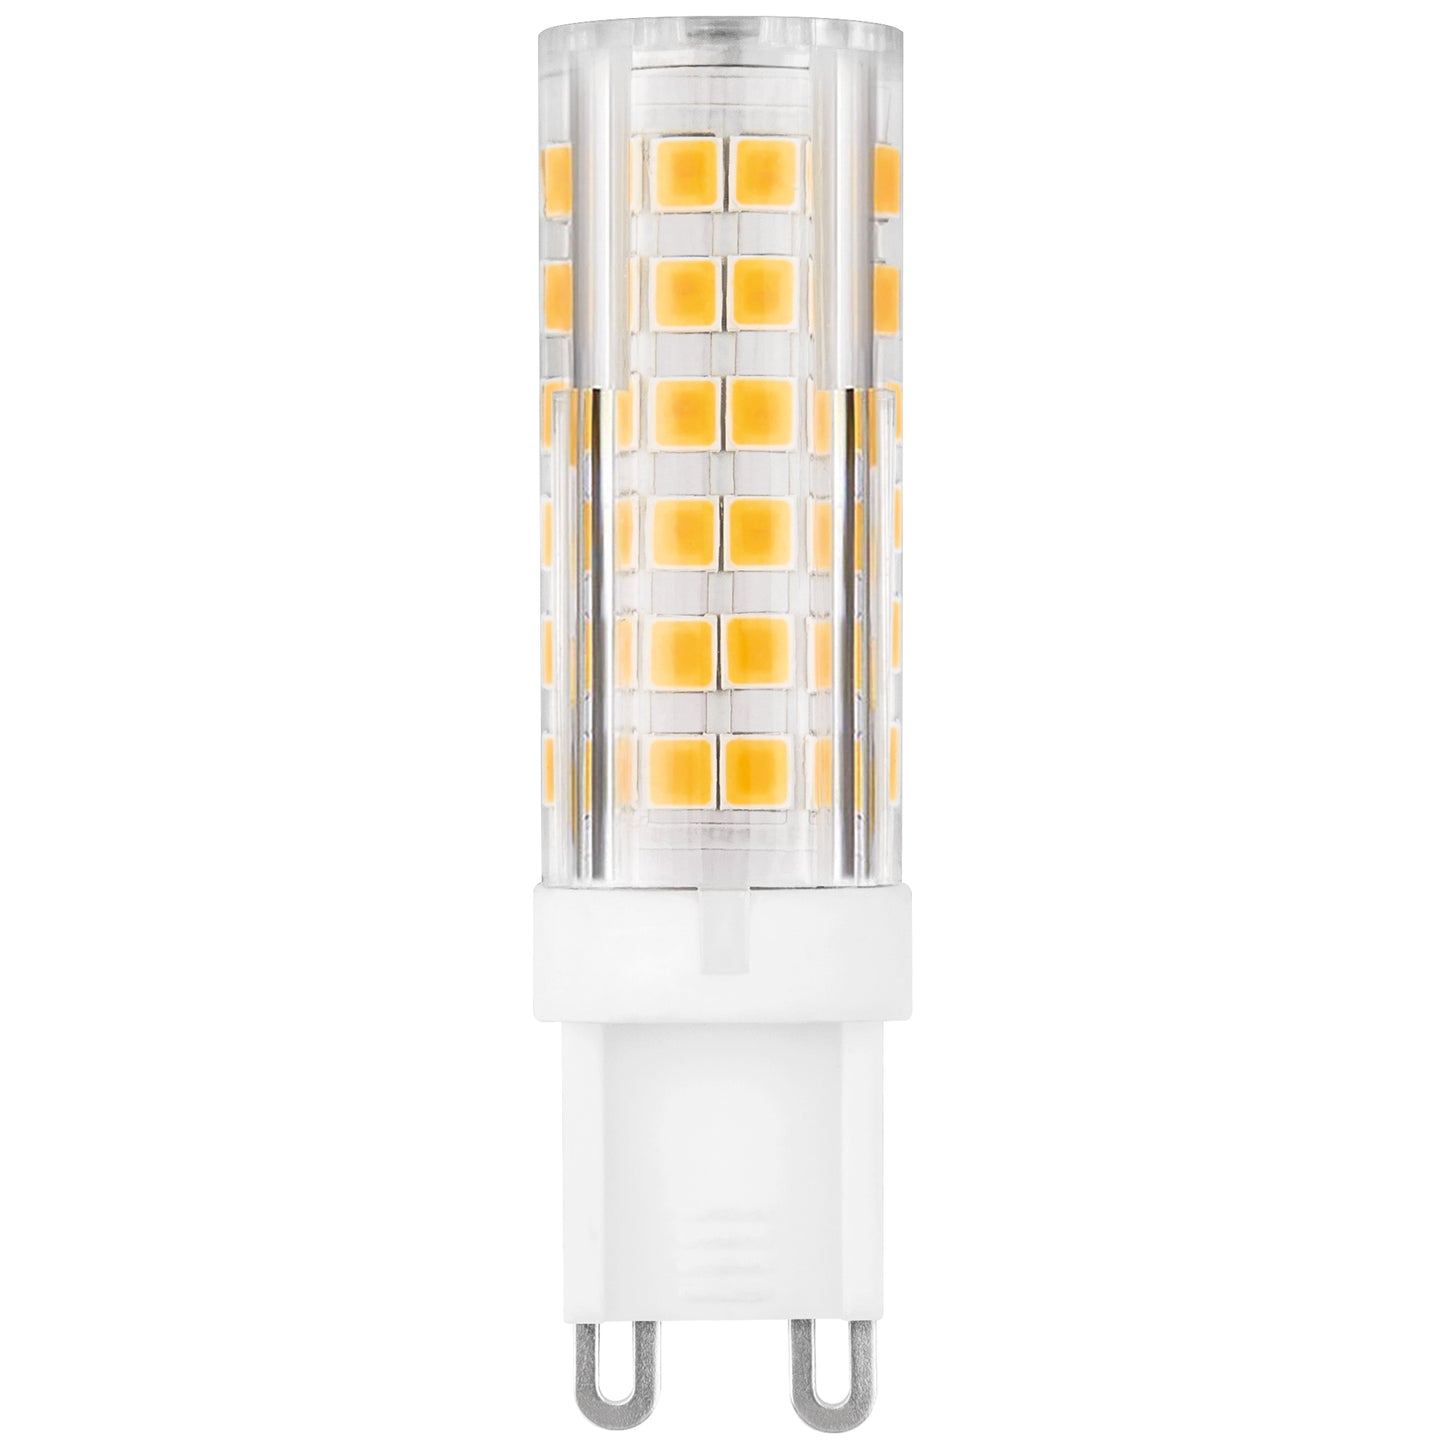 LED LAMP MATEL G9 ALUMINUM PC 8W 